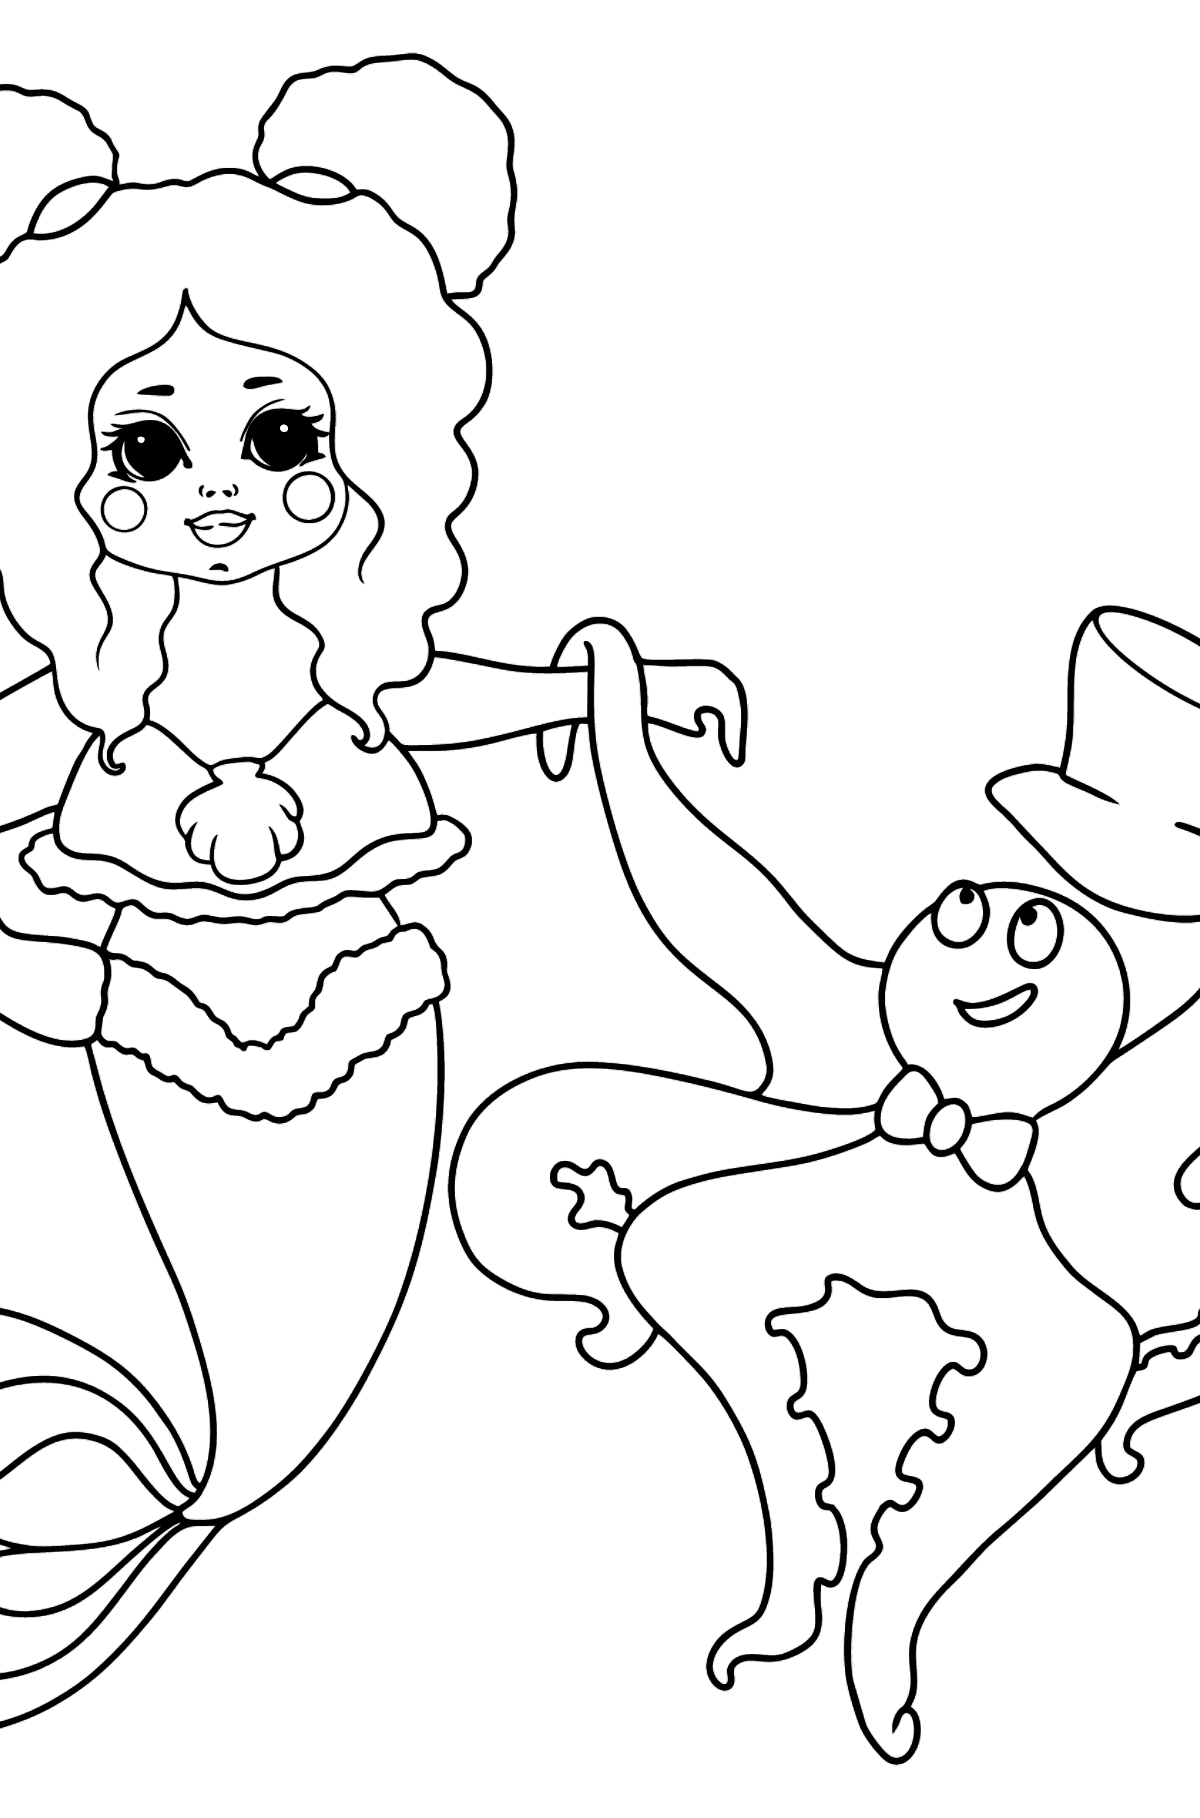 Desenho de sereia e polvo para colorir - Imagens para Colorir para Crianças